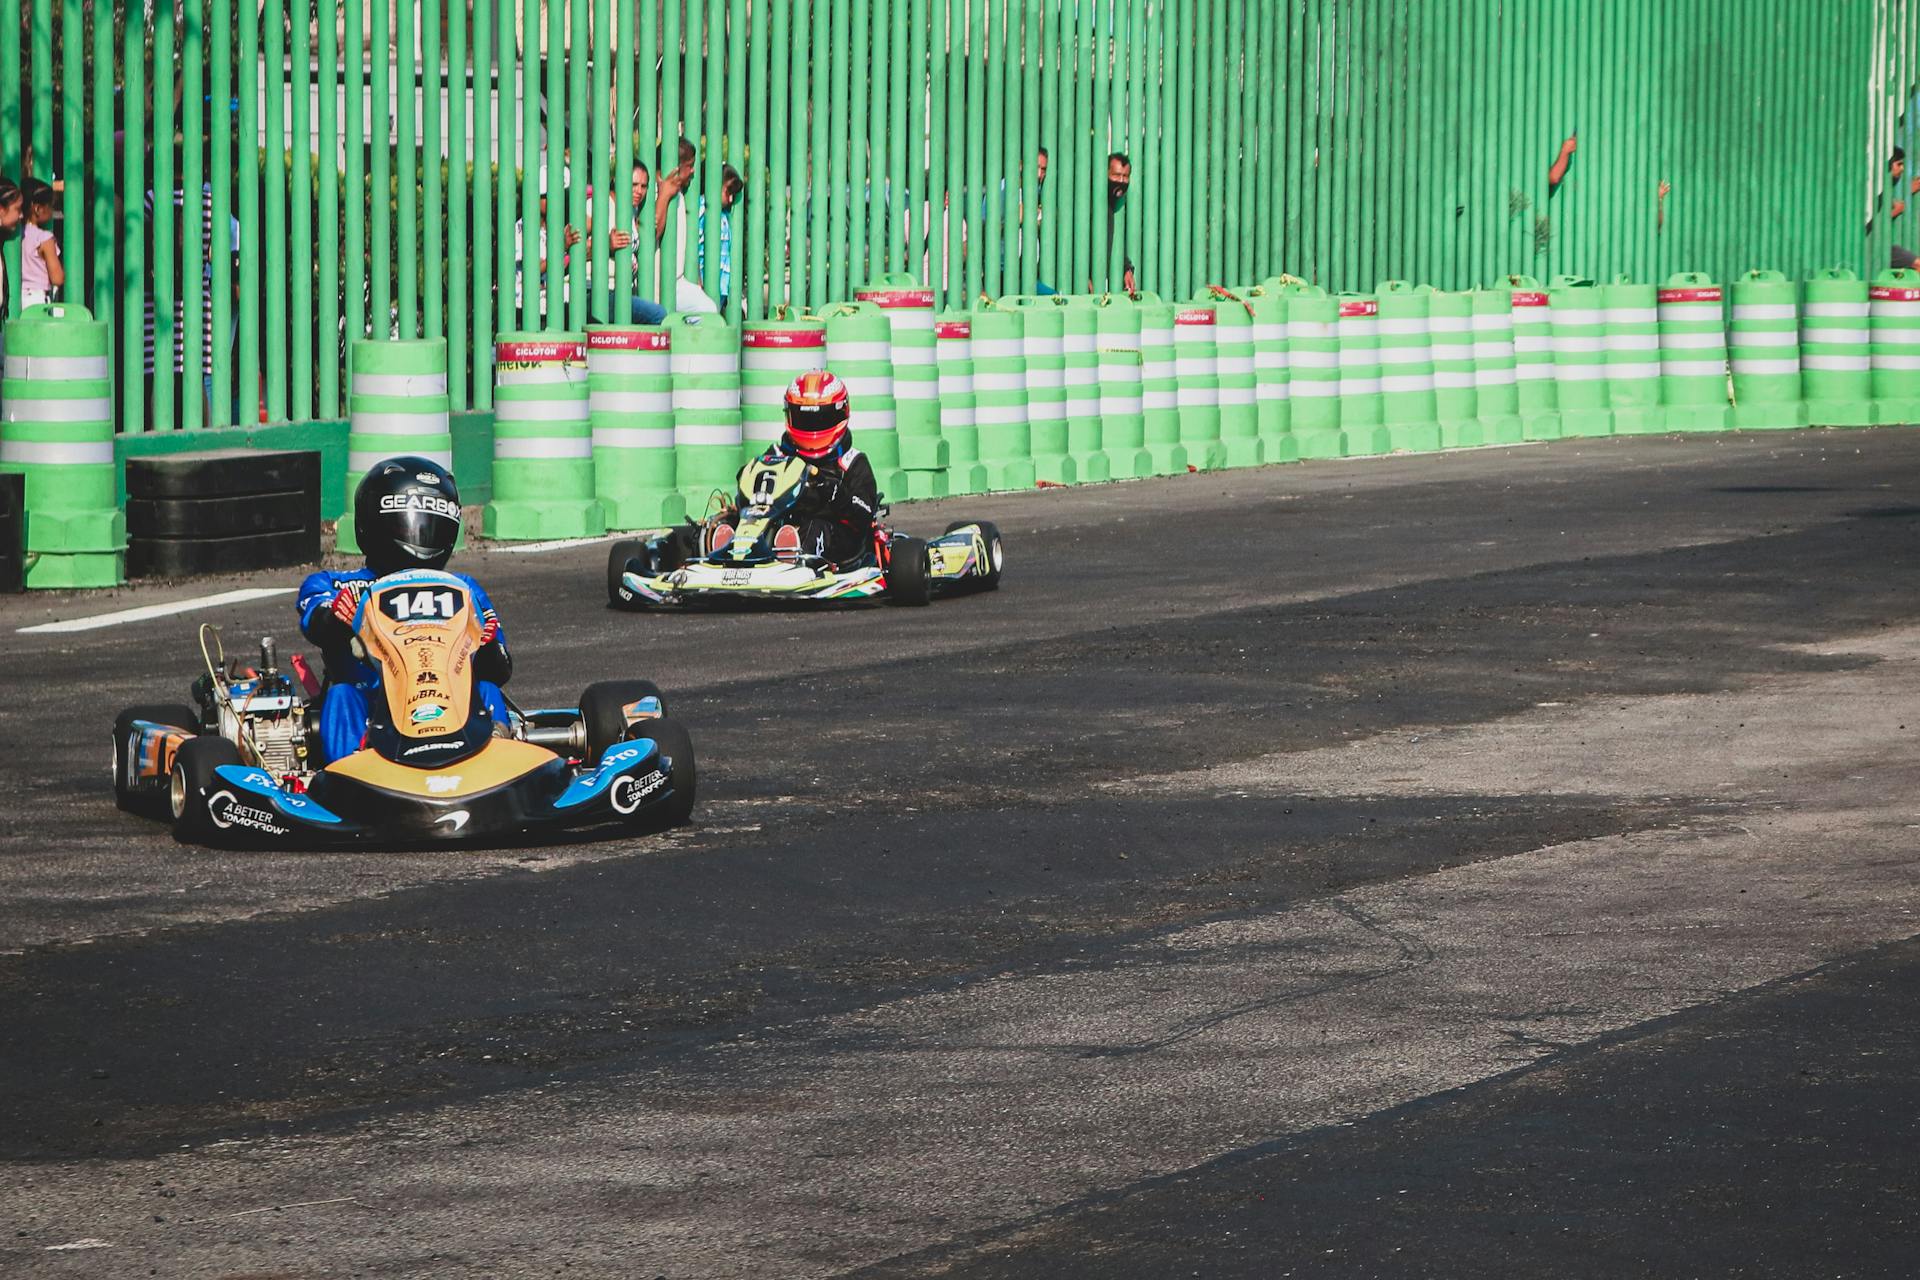 People racing | Source: Pexels